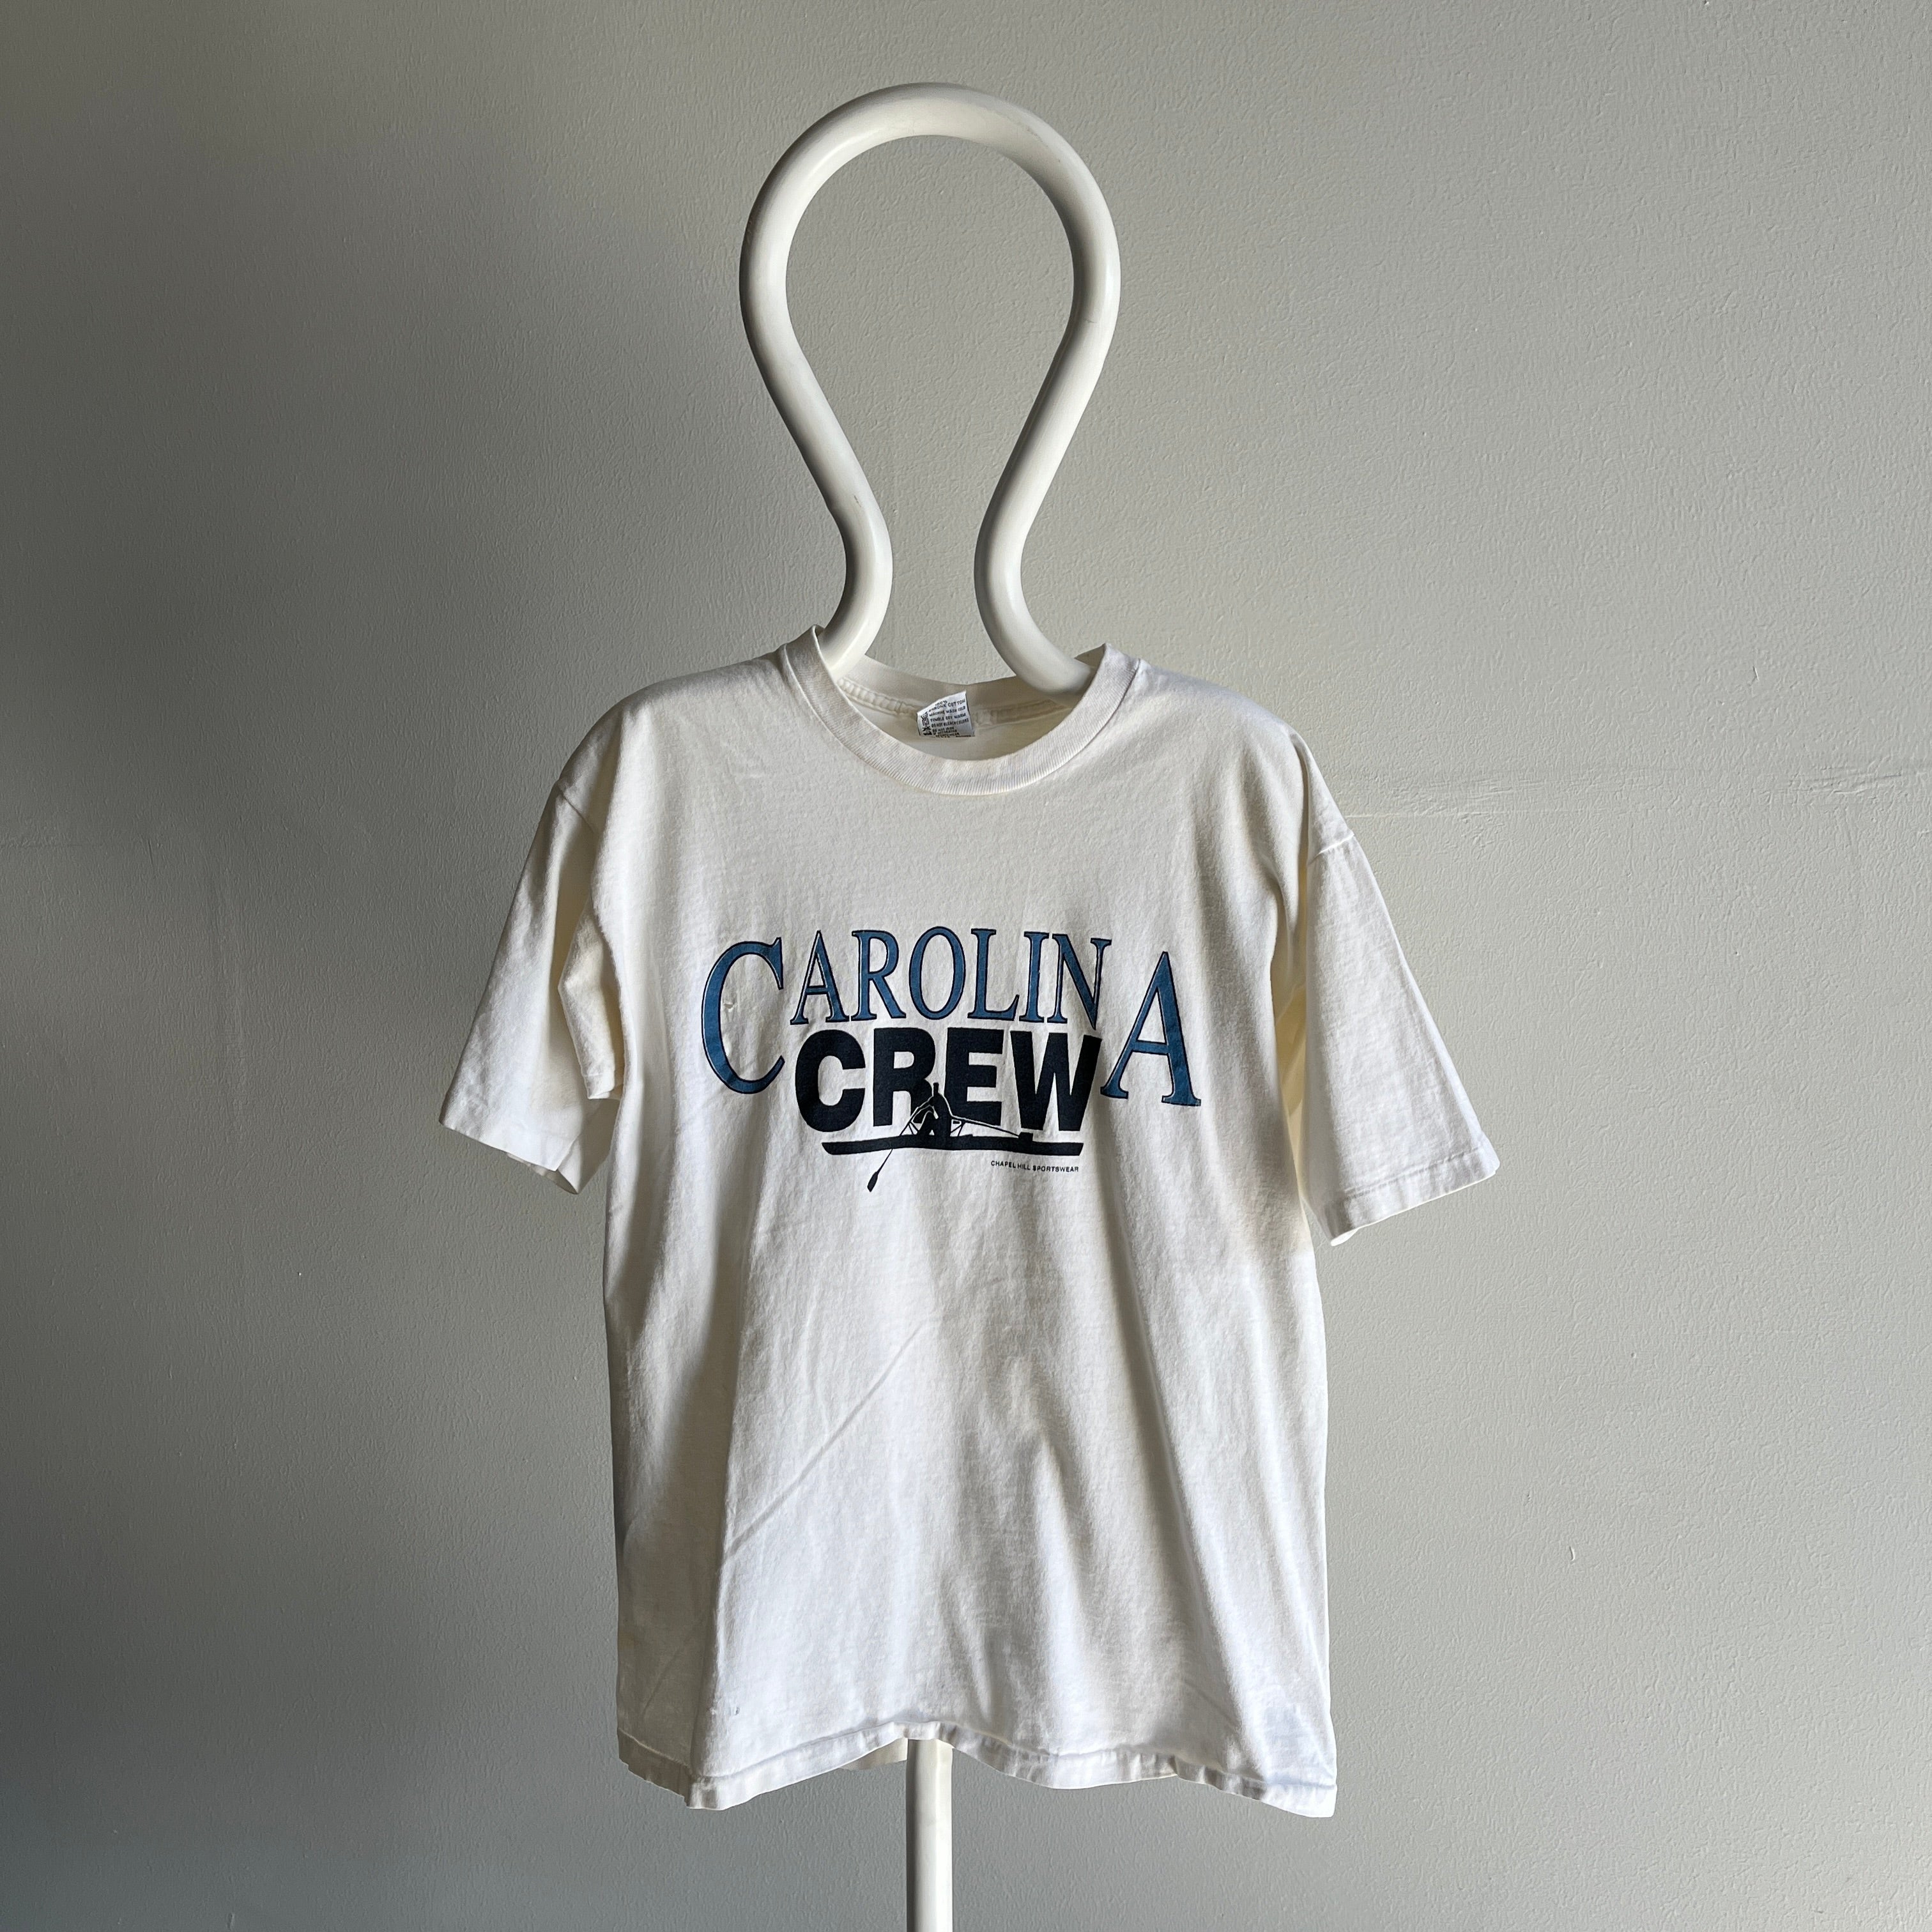 1990s Carolina Crew - Rowing T-Shirt by Cal Cru